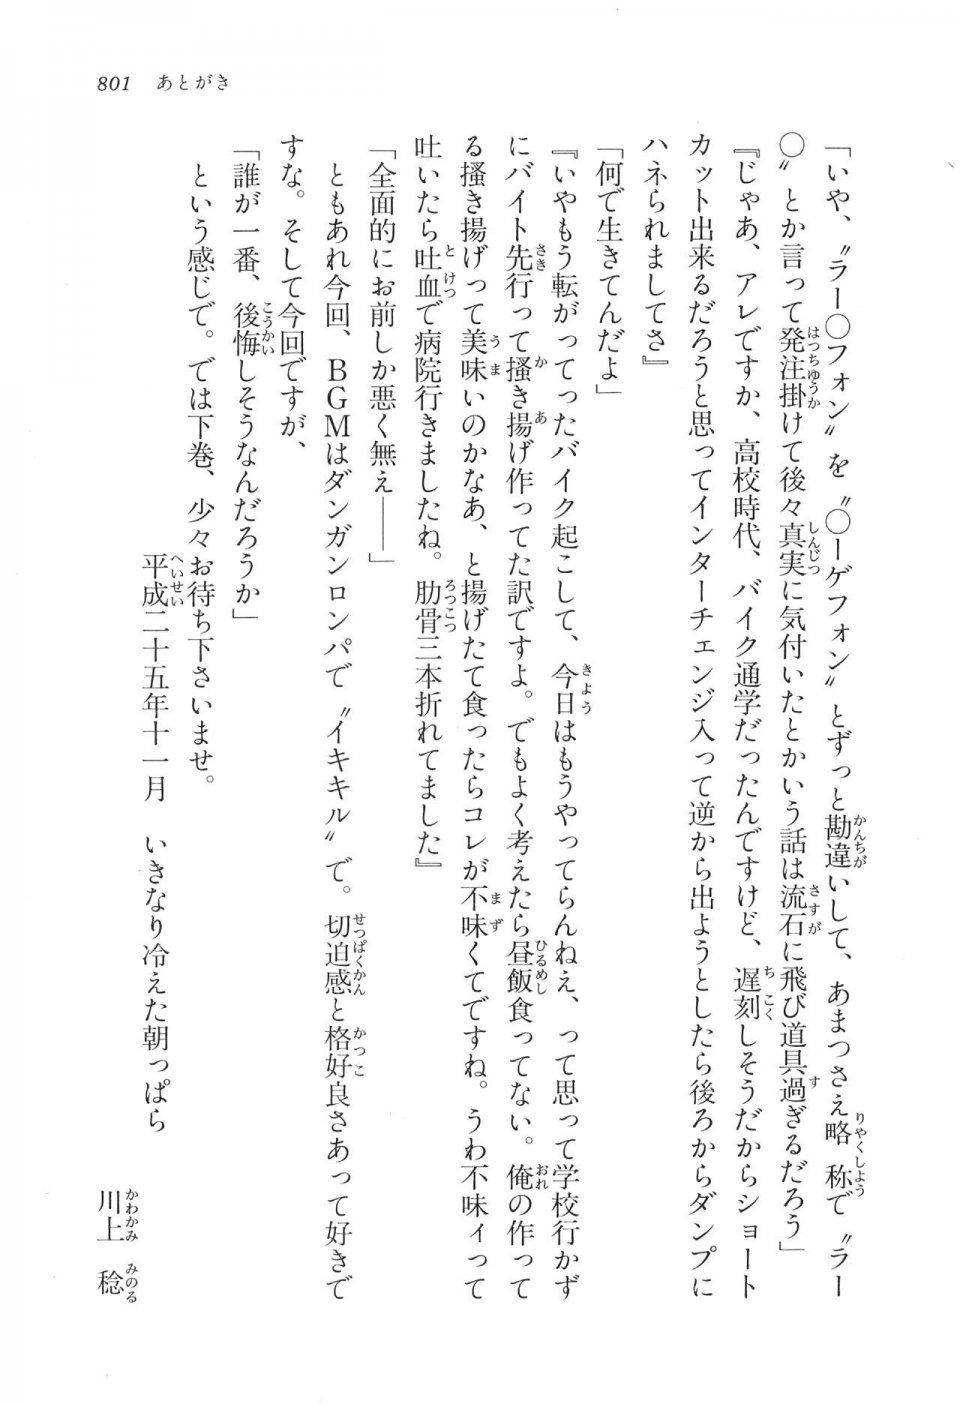 Kyoukai Senjou no Horizon LN Vol 16(7A) - Photo #801